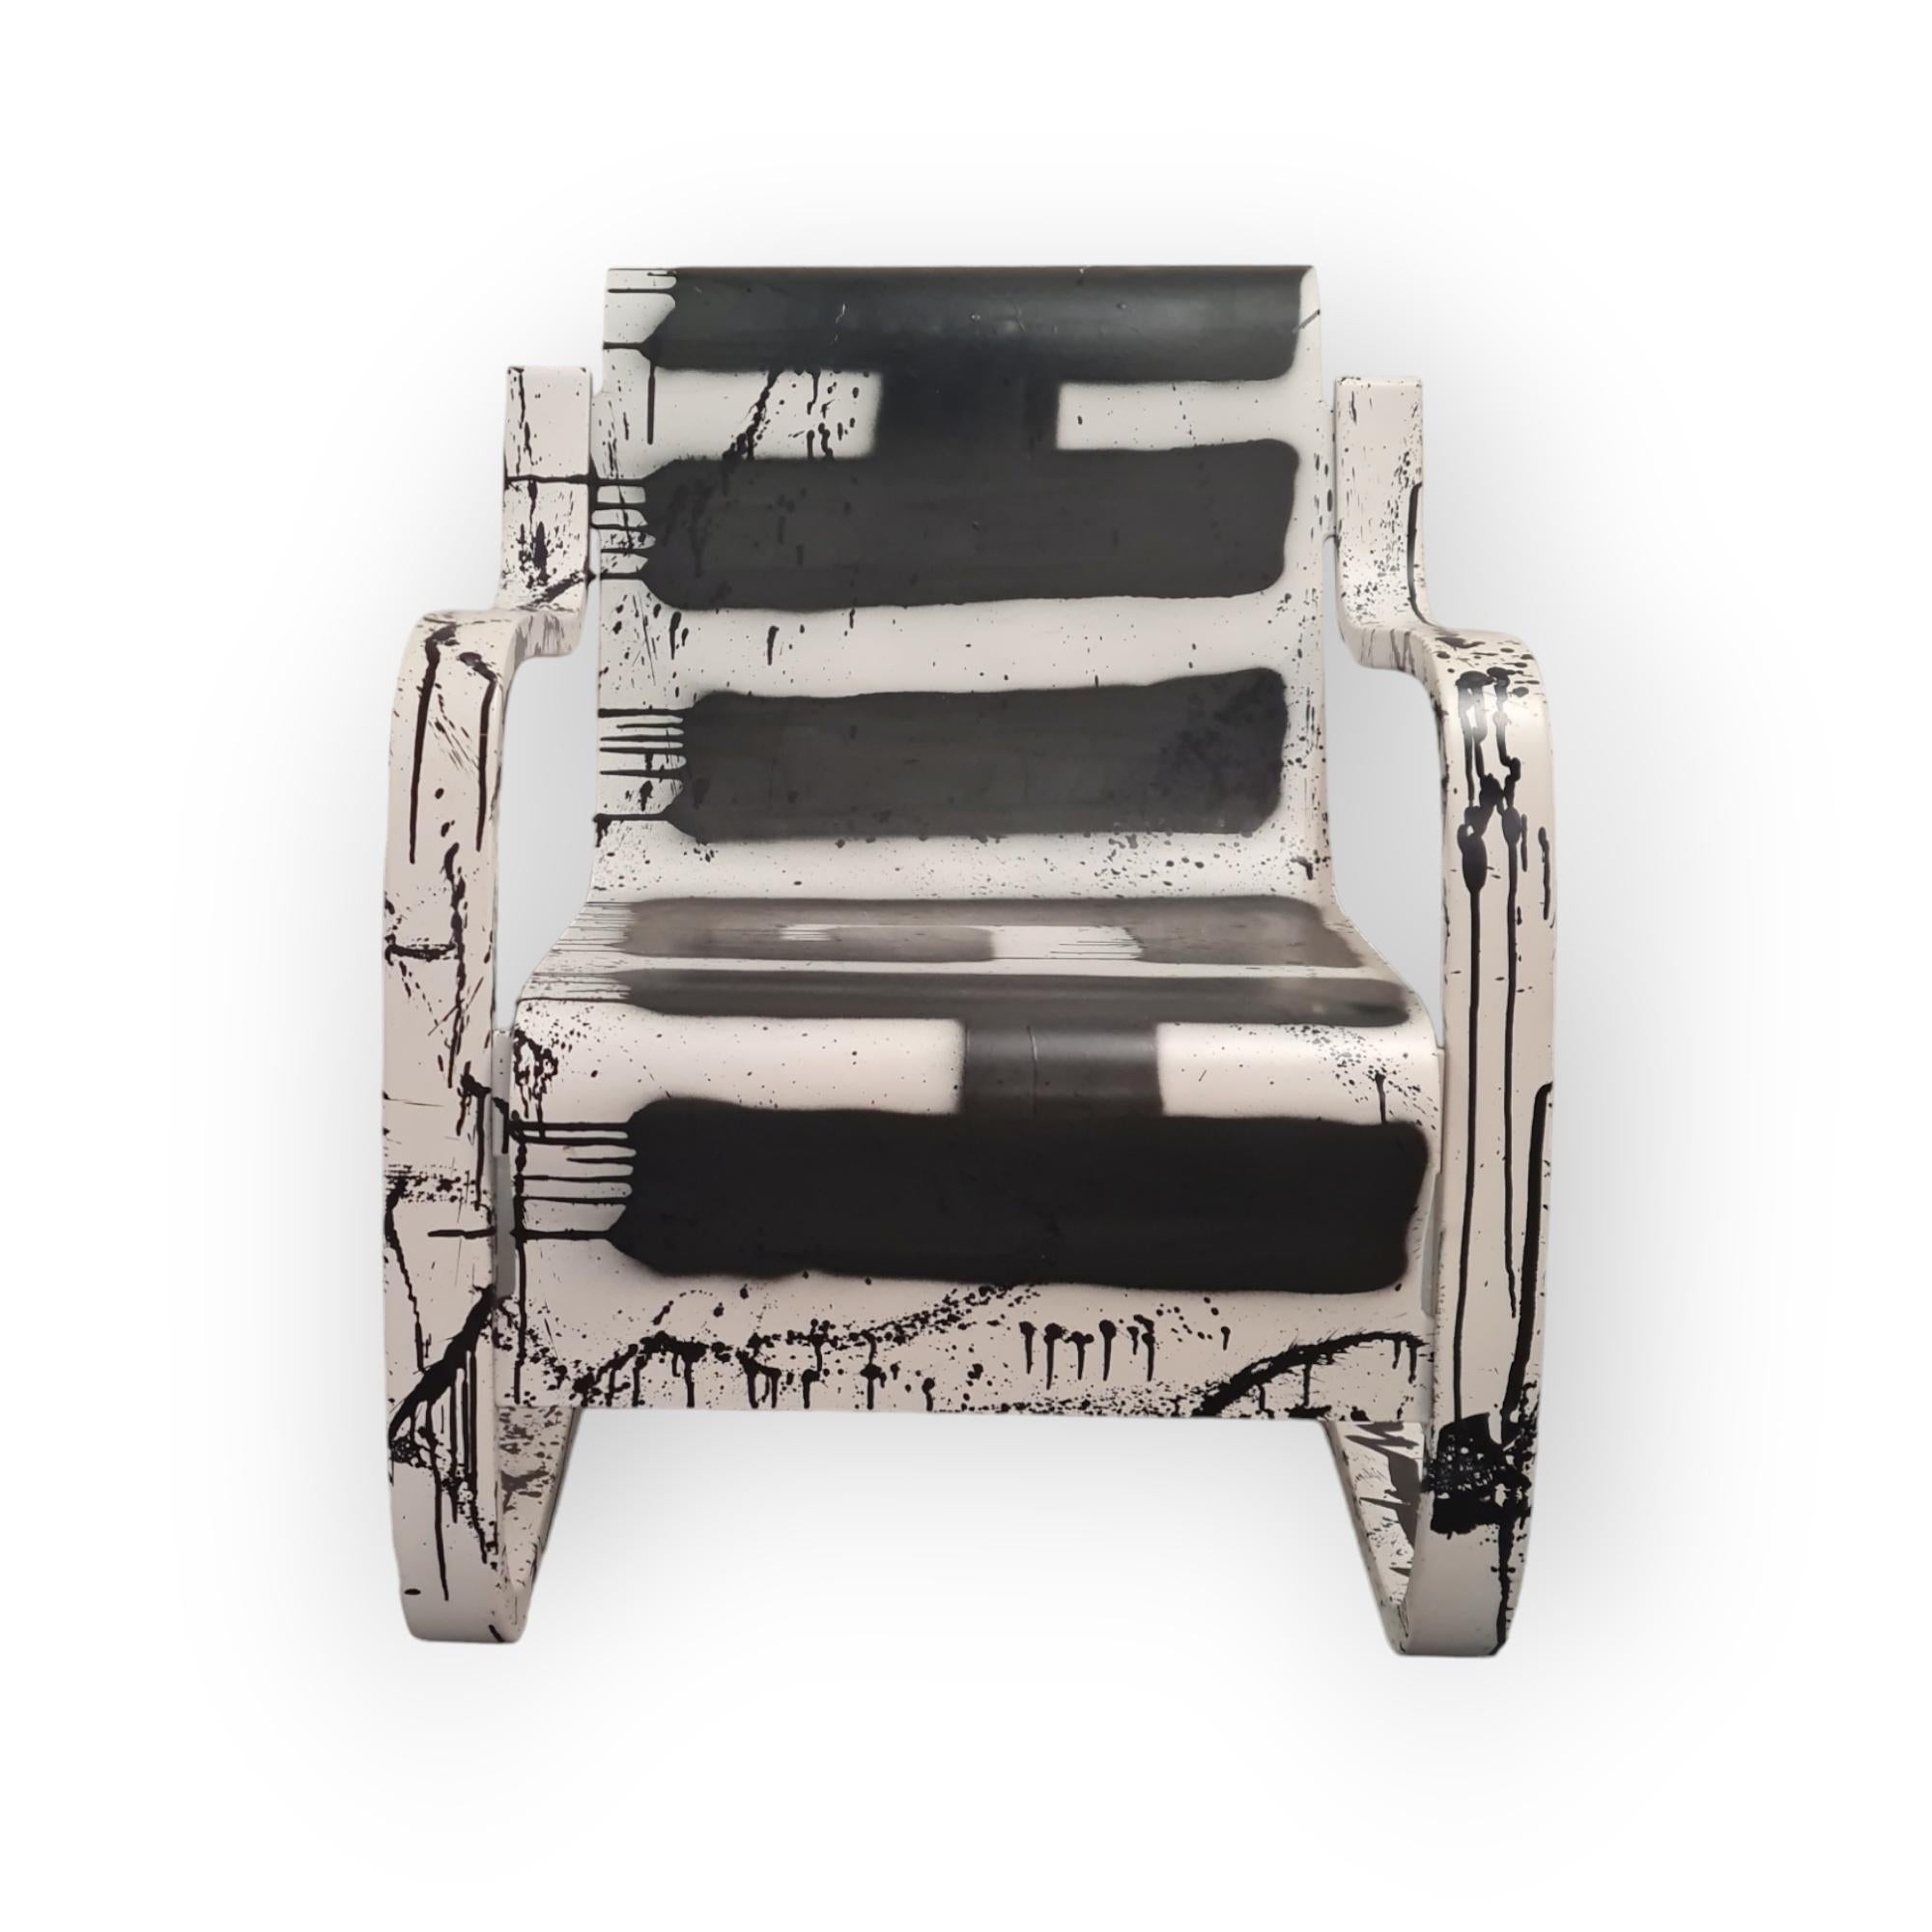 Bien qu'il s'agisse de l'une des œuvres les plus emblématiques et les plus raffinées d'Alvar Aalto, la chaise modèle 42, également connue sous le nom de  Chaise à ressort, `Pikku Paimio` ou Small Paimio en anglais, dans ce cas particulier nous